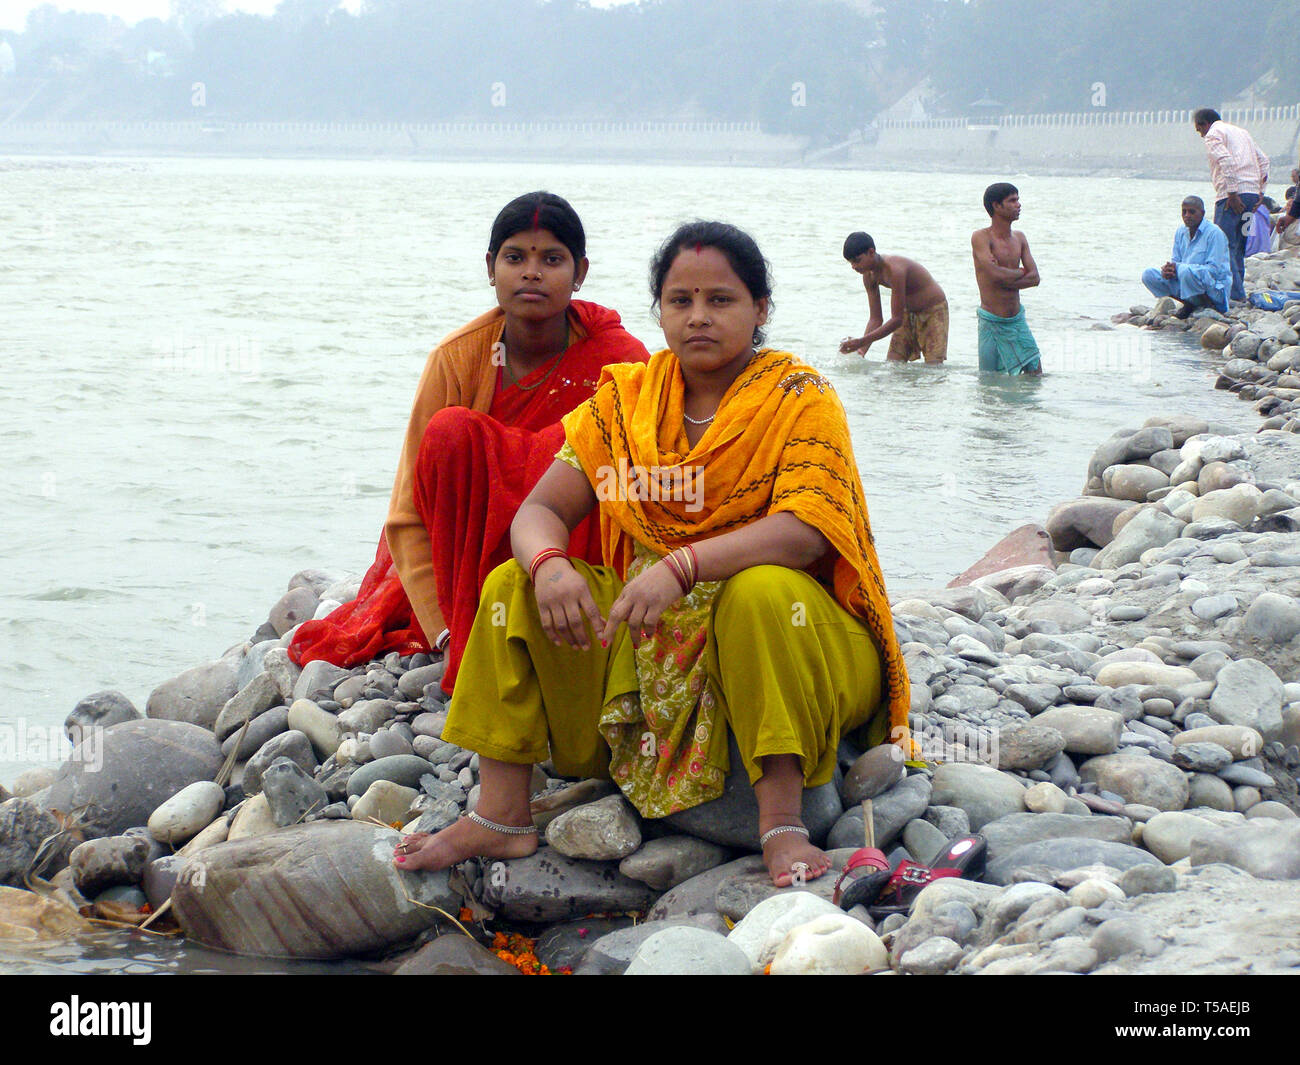 AMRITSAR, INDIA, DEC-7, 2015: non identificato due donne indiane in sari sono seduto su una roccia vicino all'acqua. Foto Stock